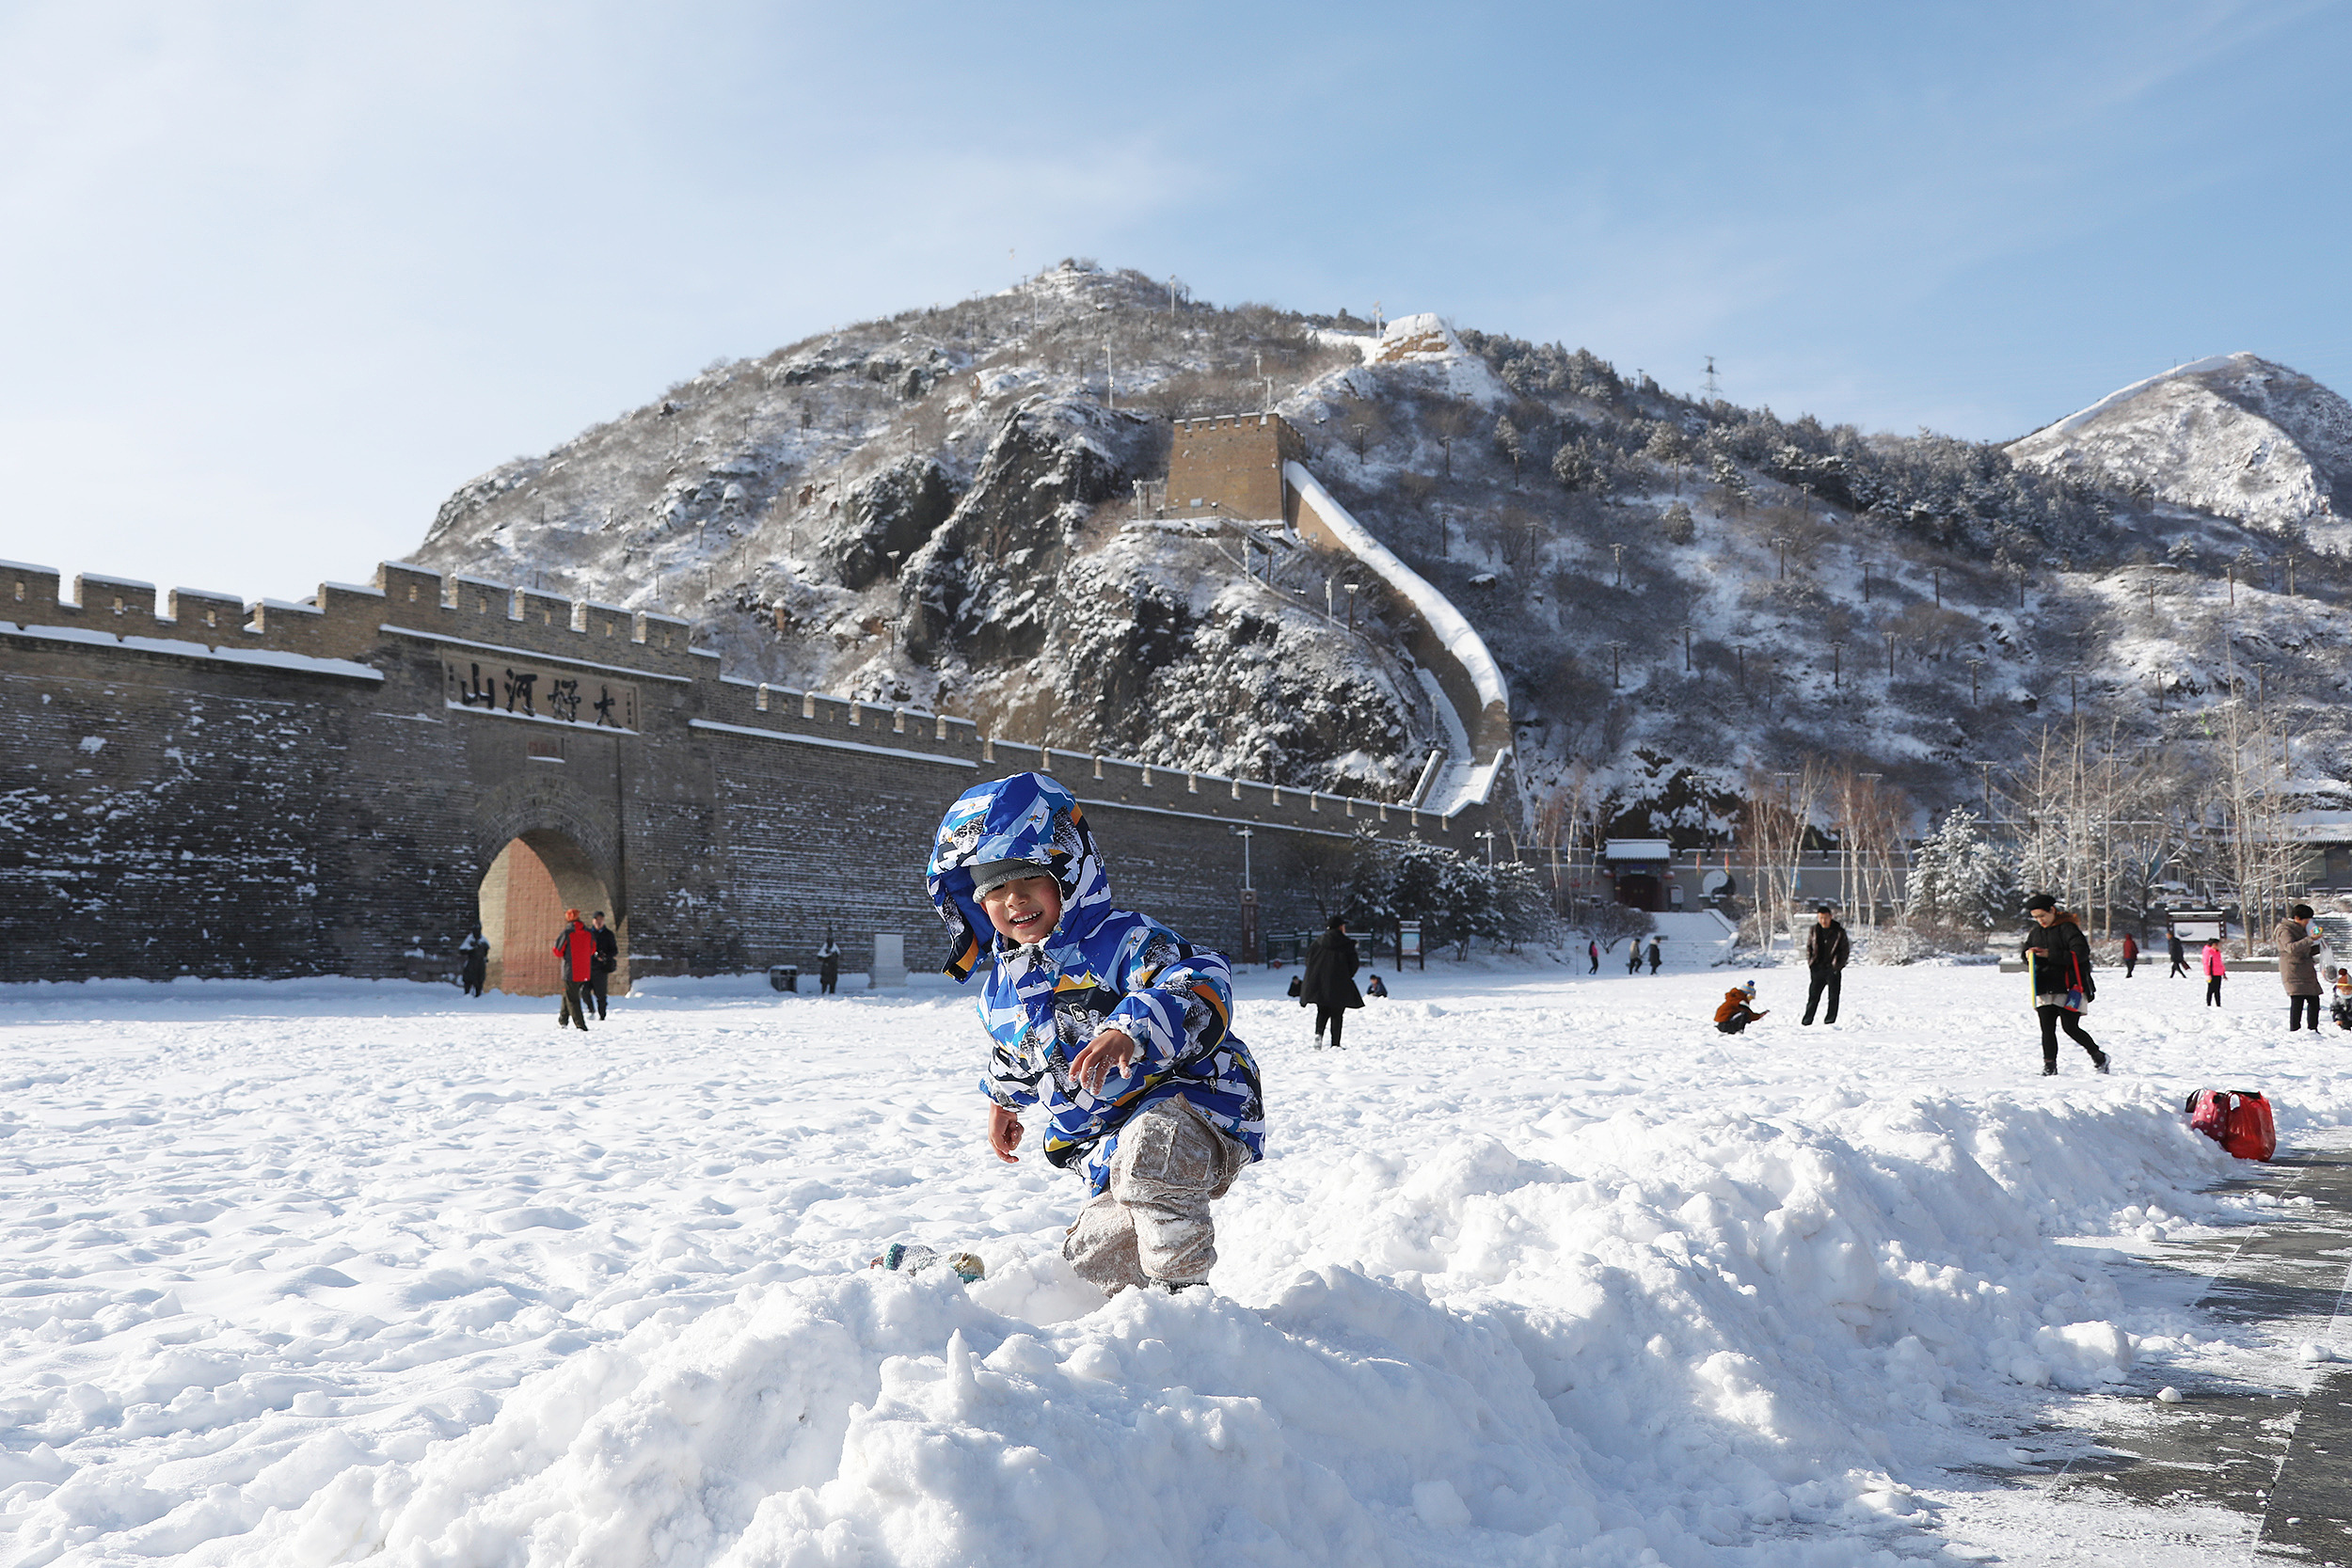 河北崇礼：人工造雪 为滑雪季做准备--图片频道--人民网